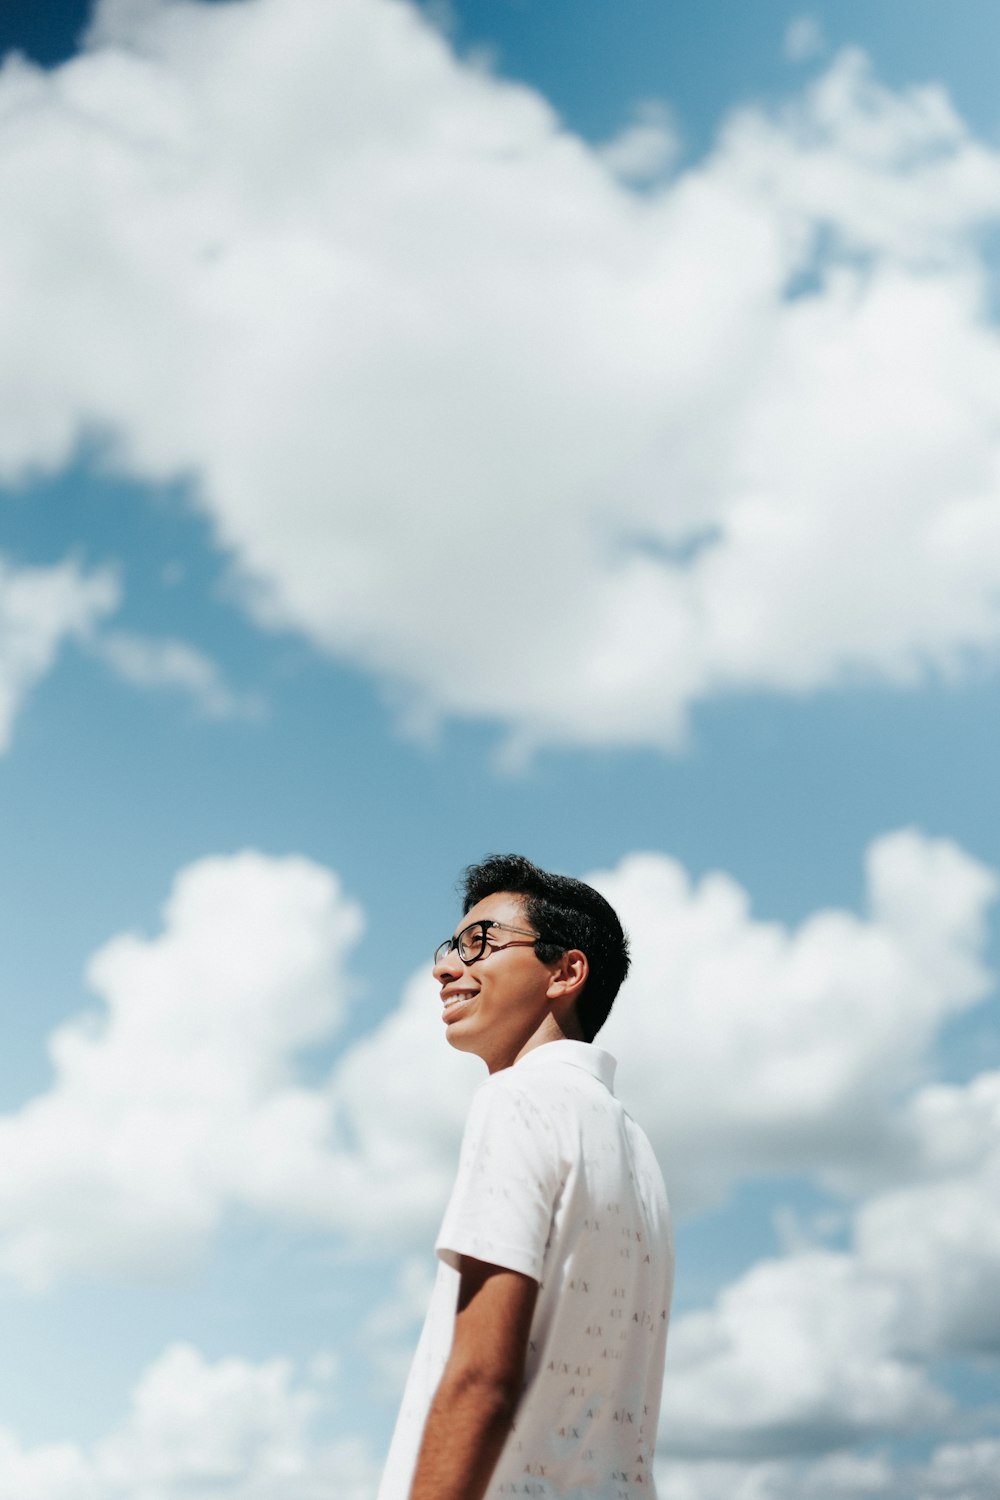 Un hombre con camisa blanca y gafas de pie bajo un cielo azul nublado